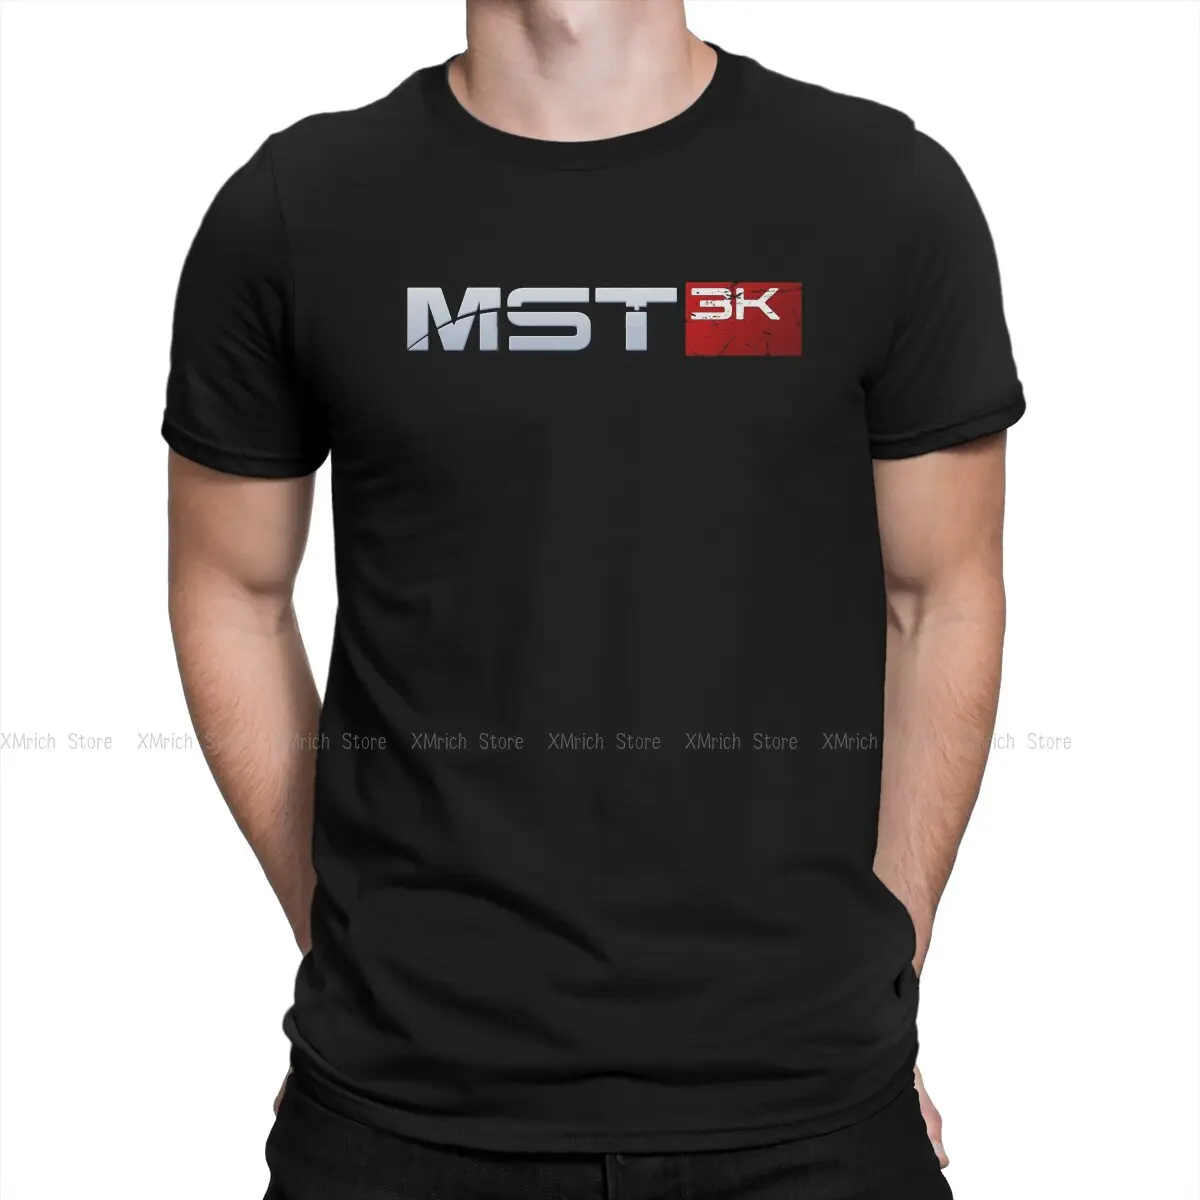 

Men T-Shirt MST3K Funny Cotton Tee Shirt Short Sleeve Mass Effect Commander Shepard Asari Game Shirts Round Collar Tops Summer